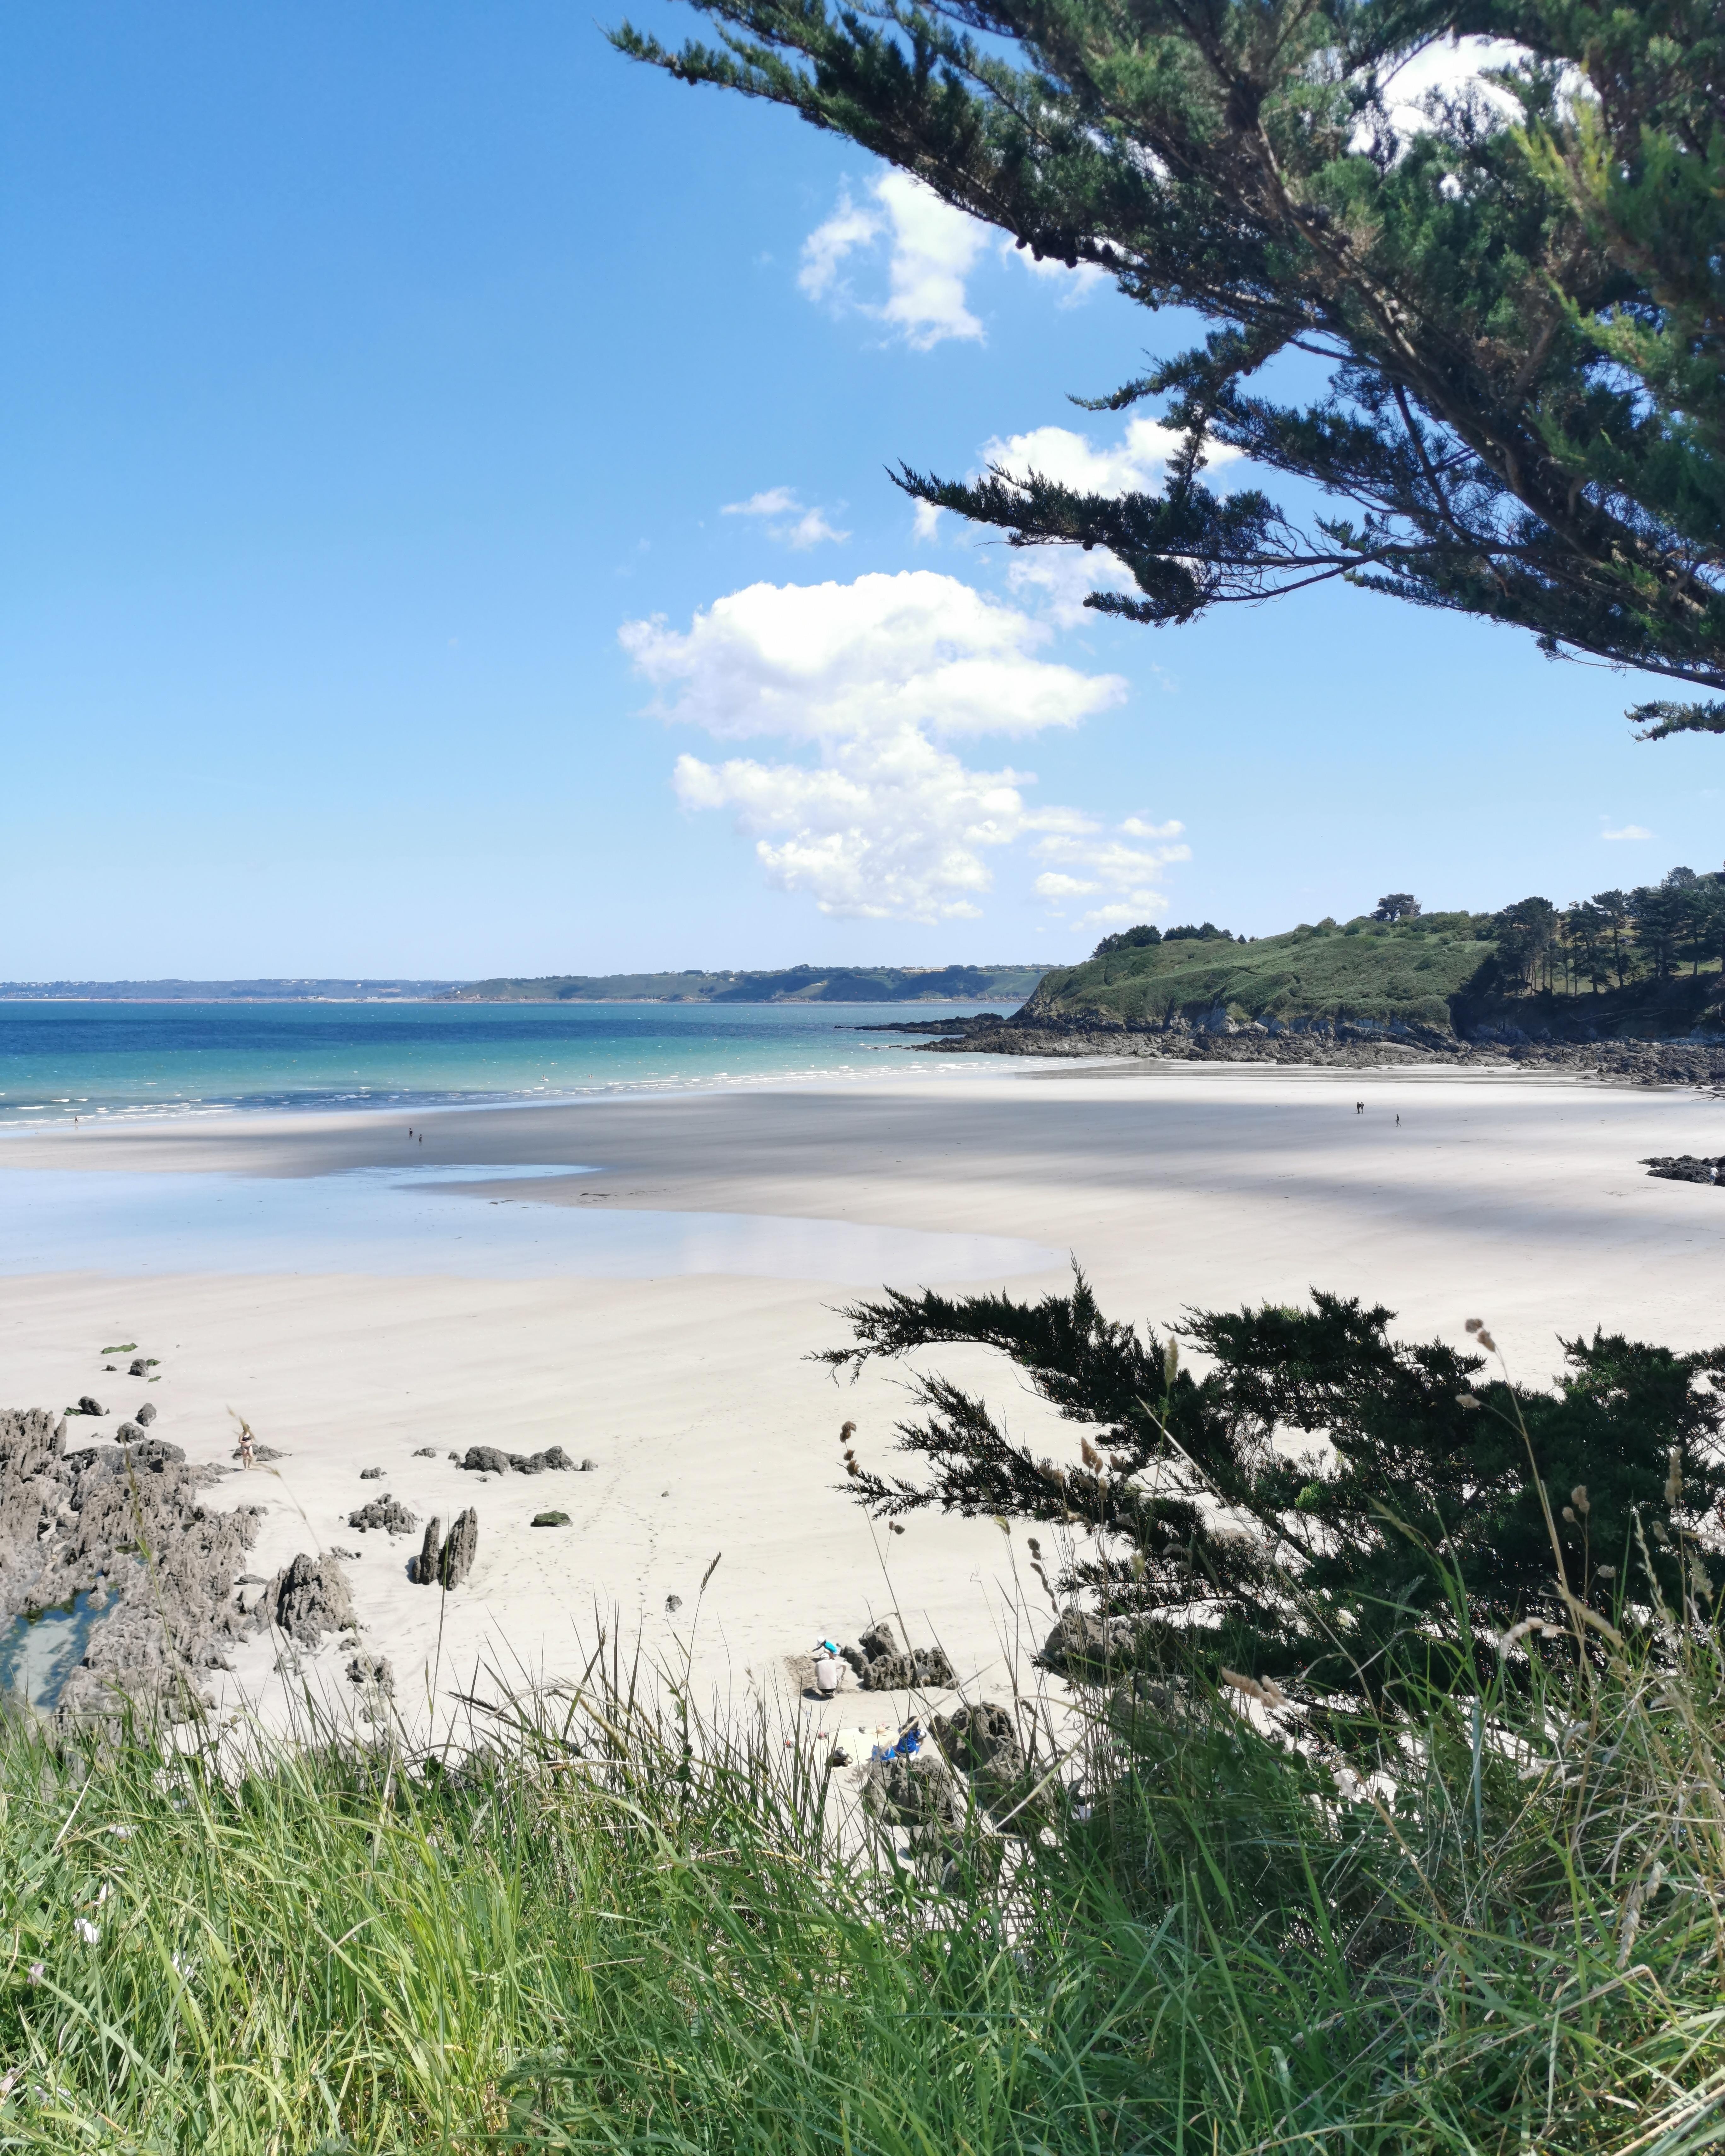 #Traumstrand in der #Bretagne gefunden 👌 #Wellness für #Seele und #Augen 💕 #travellchallenge 